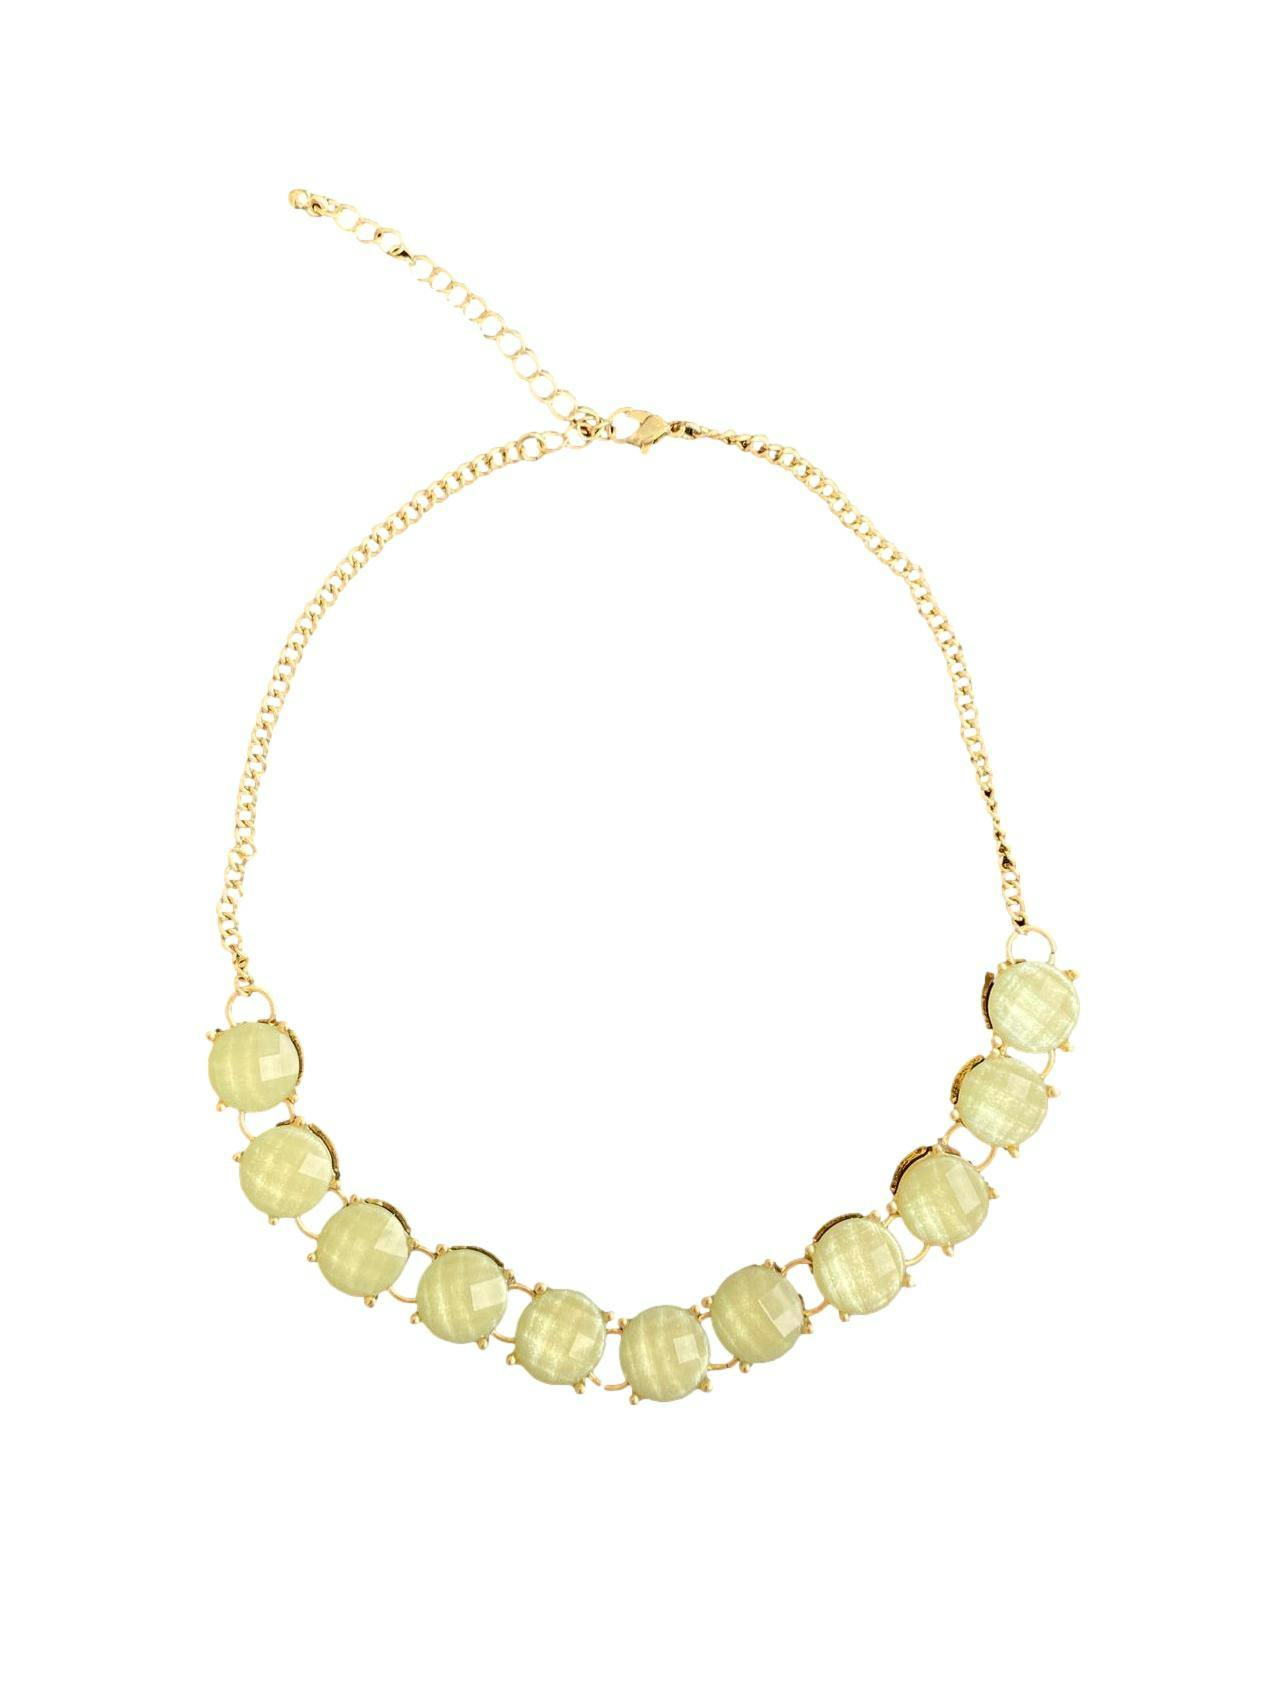 Conjunto collar y pulsera de pedrería circular verde con detalles dorados, cadena dorada